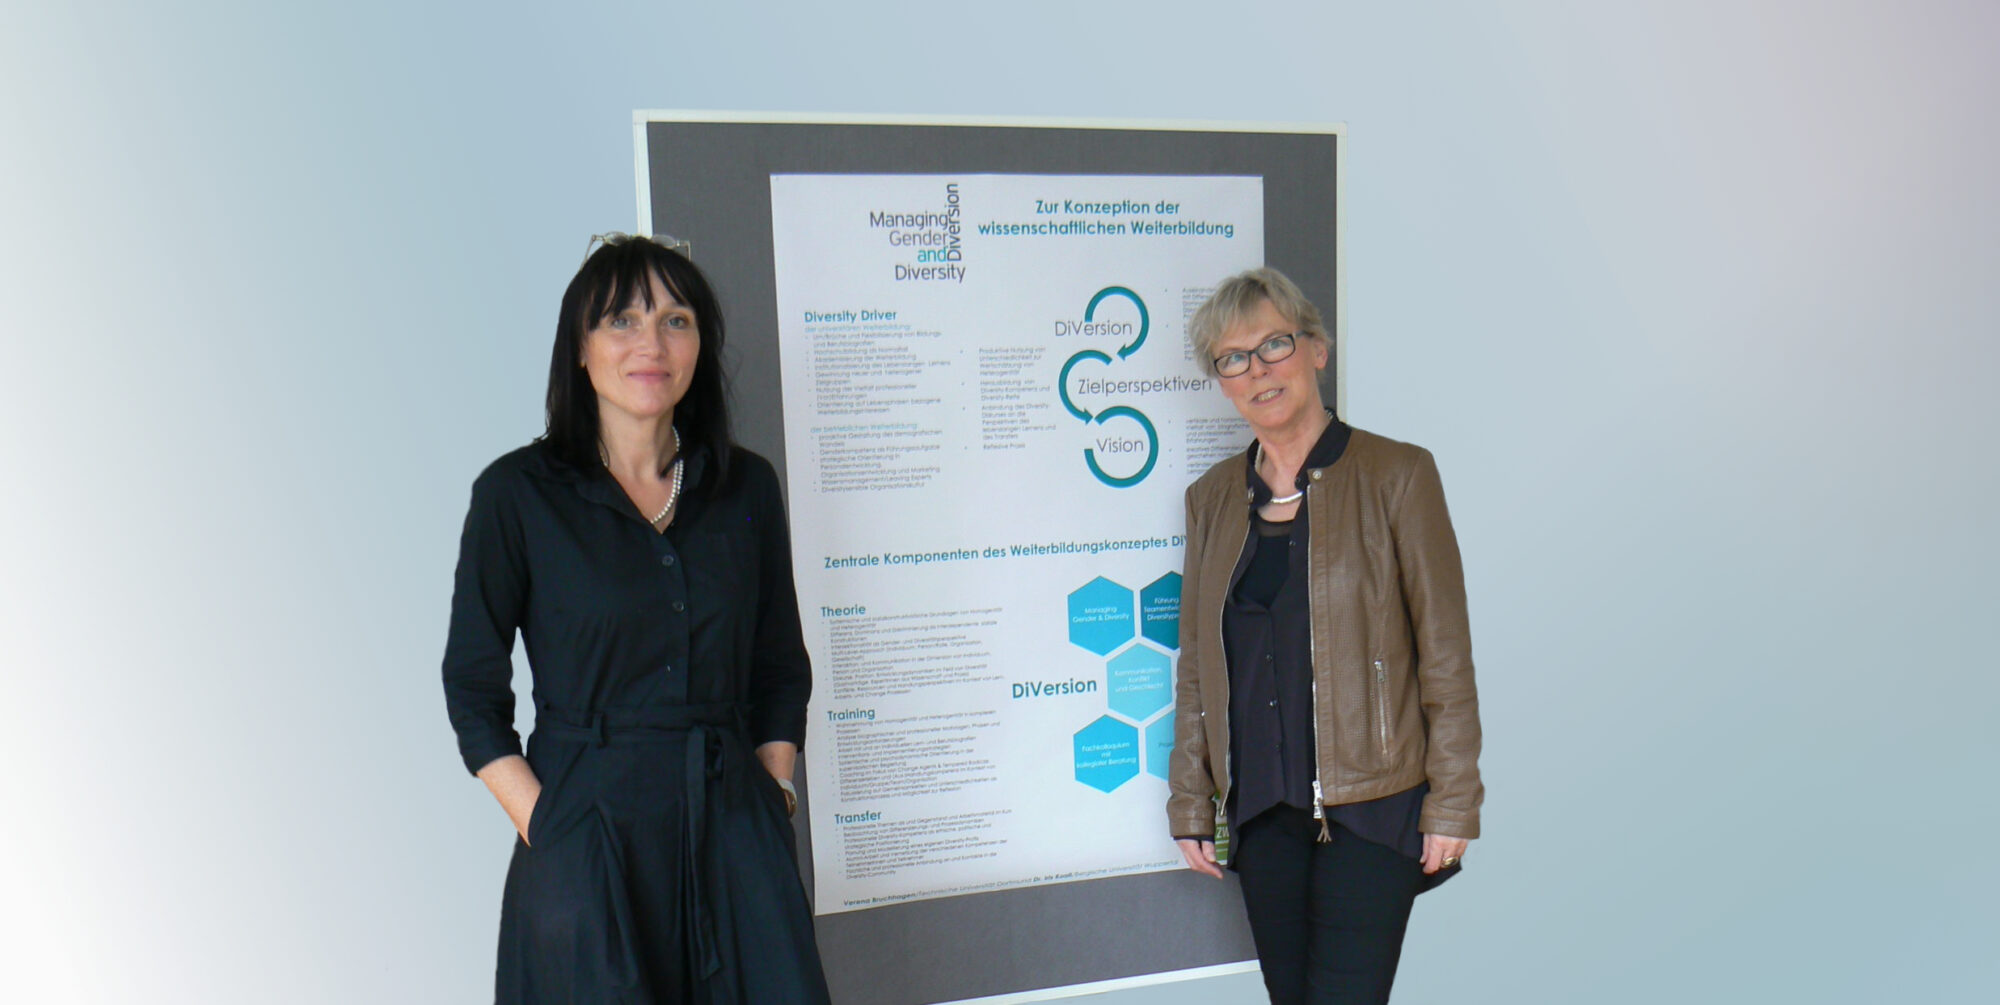 Dr. Iris Koall und Verena Bruchhagen vor einer Moderationswand im Workshop "DiVersion".